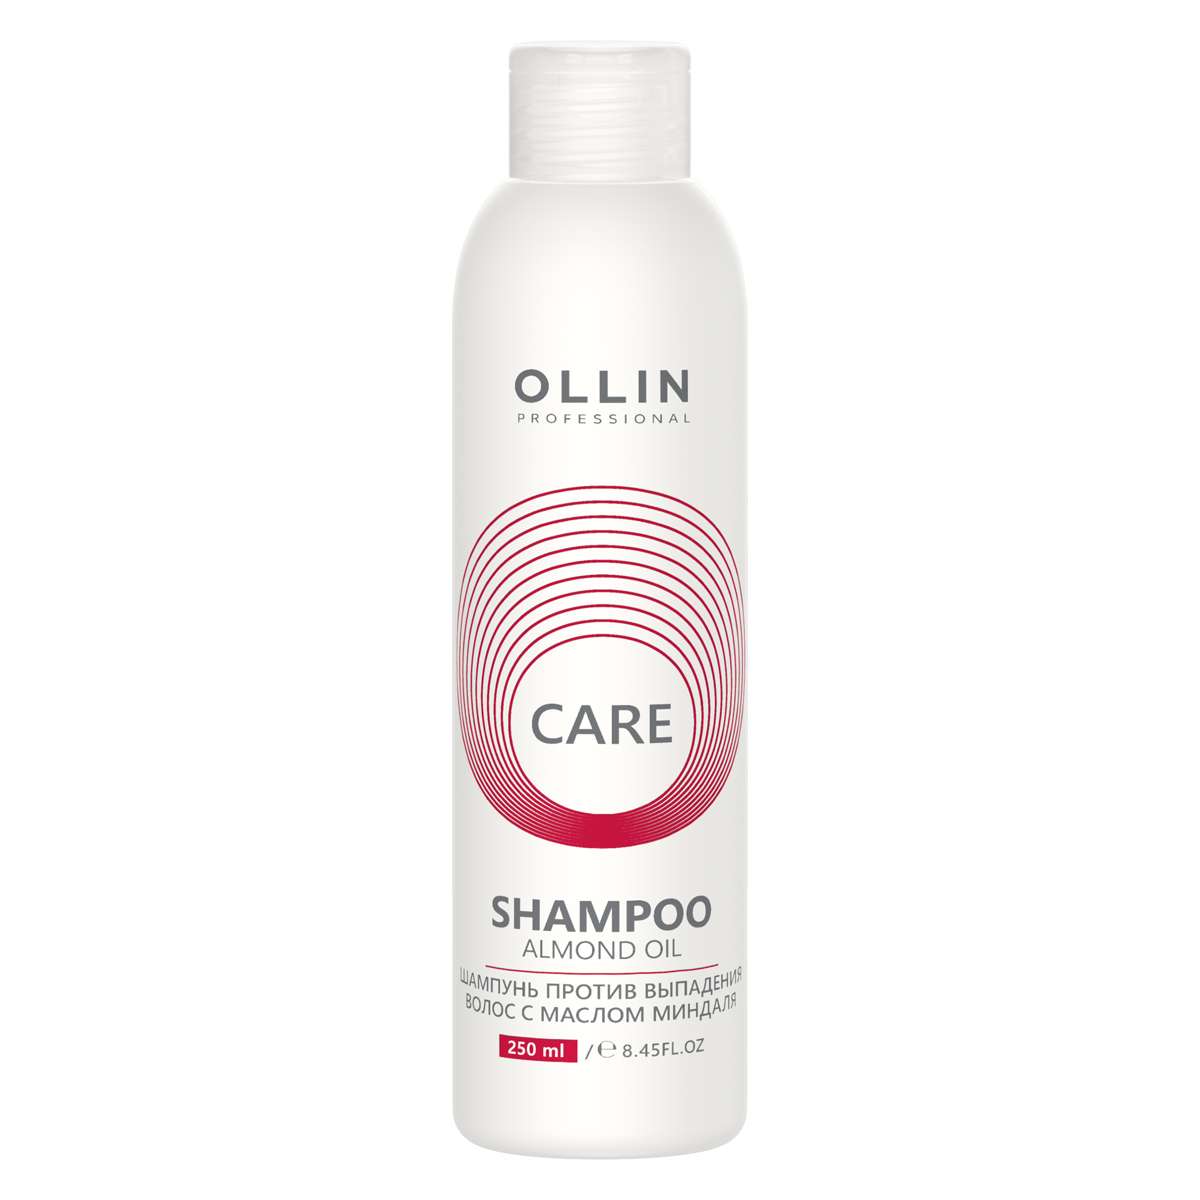 Ollin Professional Шампунь против выпадения волос с маслом миндаля, 250 мл (Ollin Professional, Care)